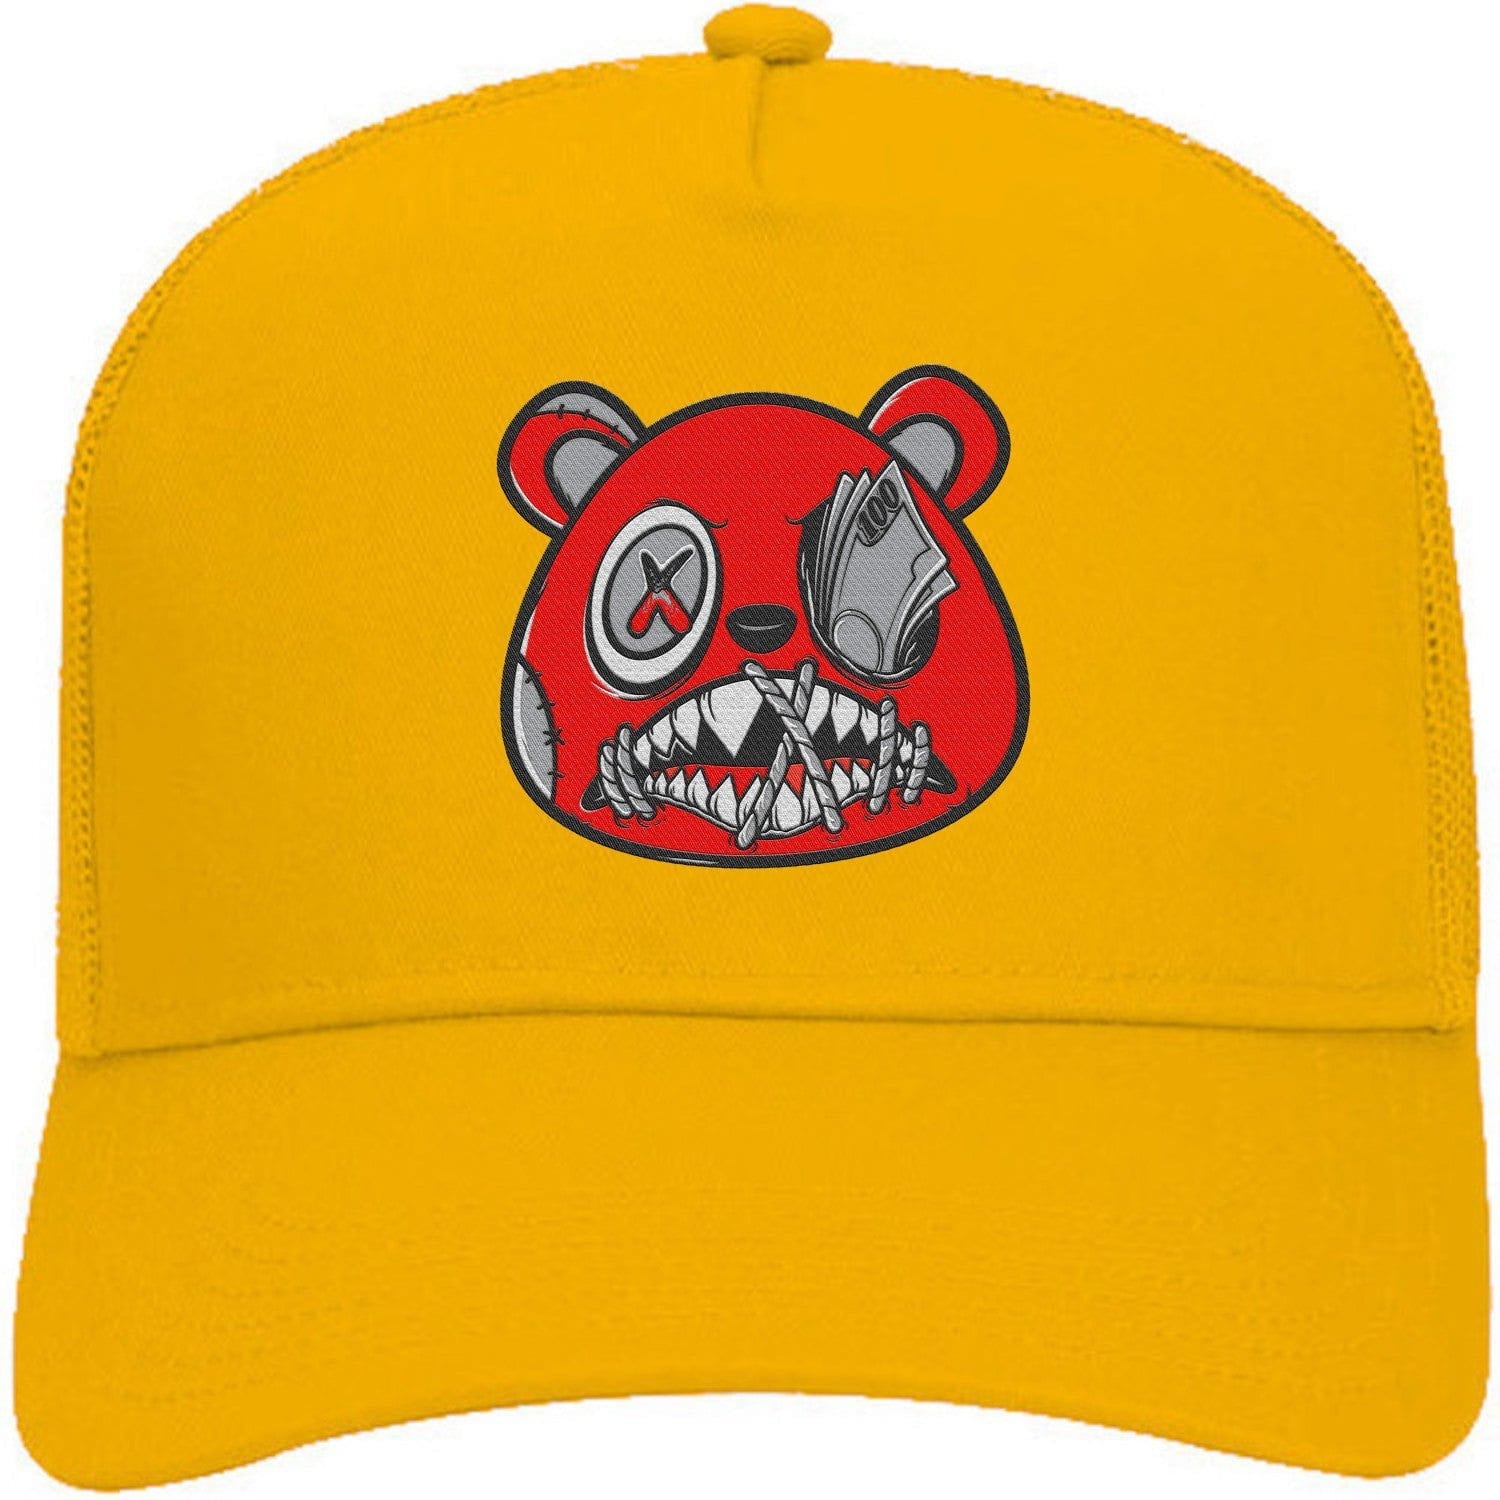 Ochre 6s Trucker Hats - Jordan 6 Ochre 6s Hats - Red Money Talks Baws